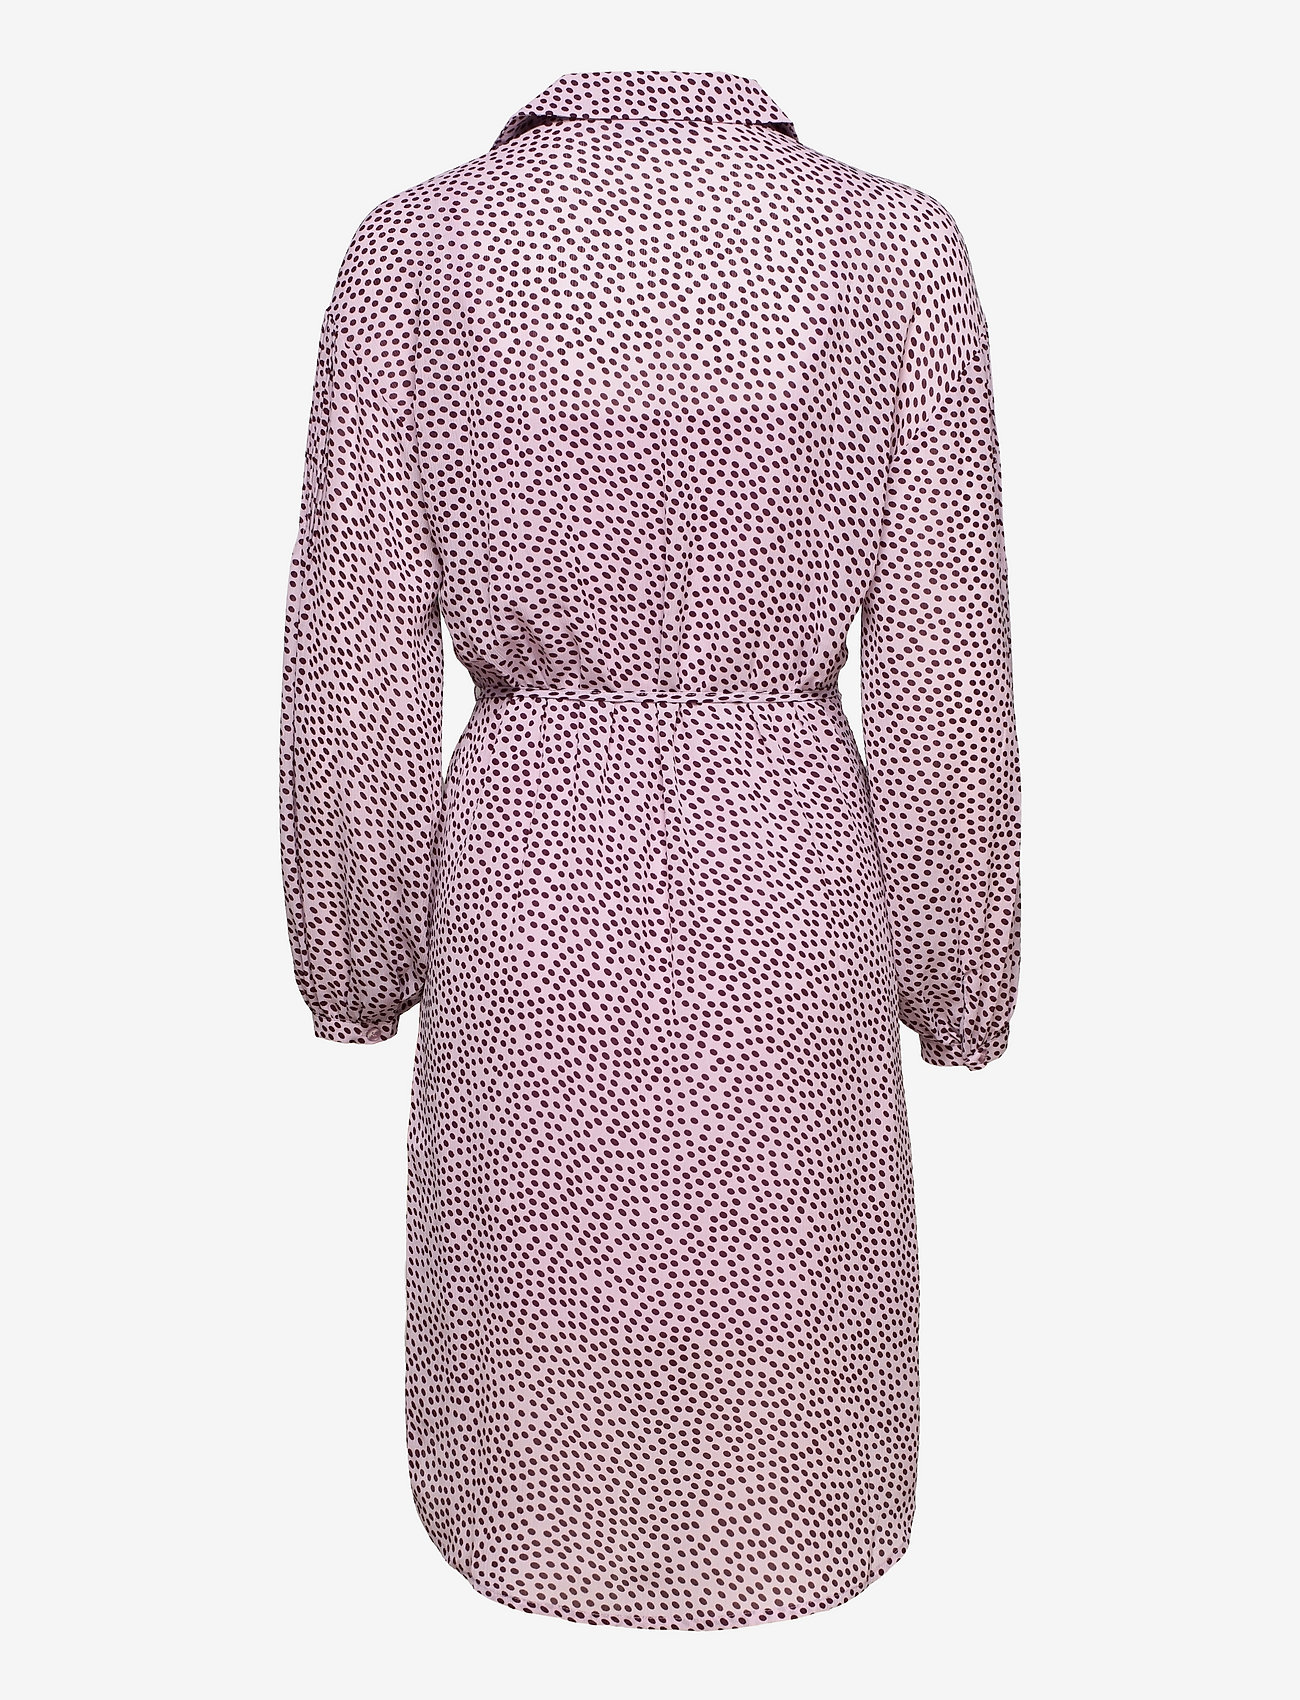 MSCH Copenhagen - Nathea Rikkelie LS Dress AOP - shirt dresses - lavender f dot - 1